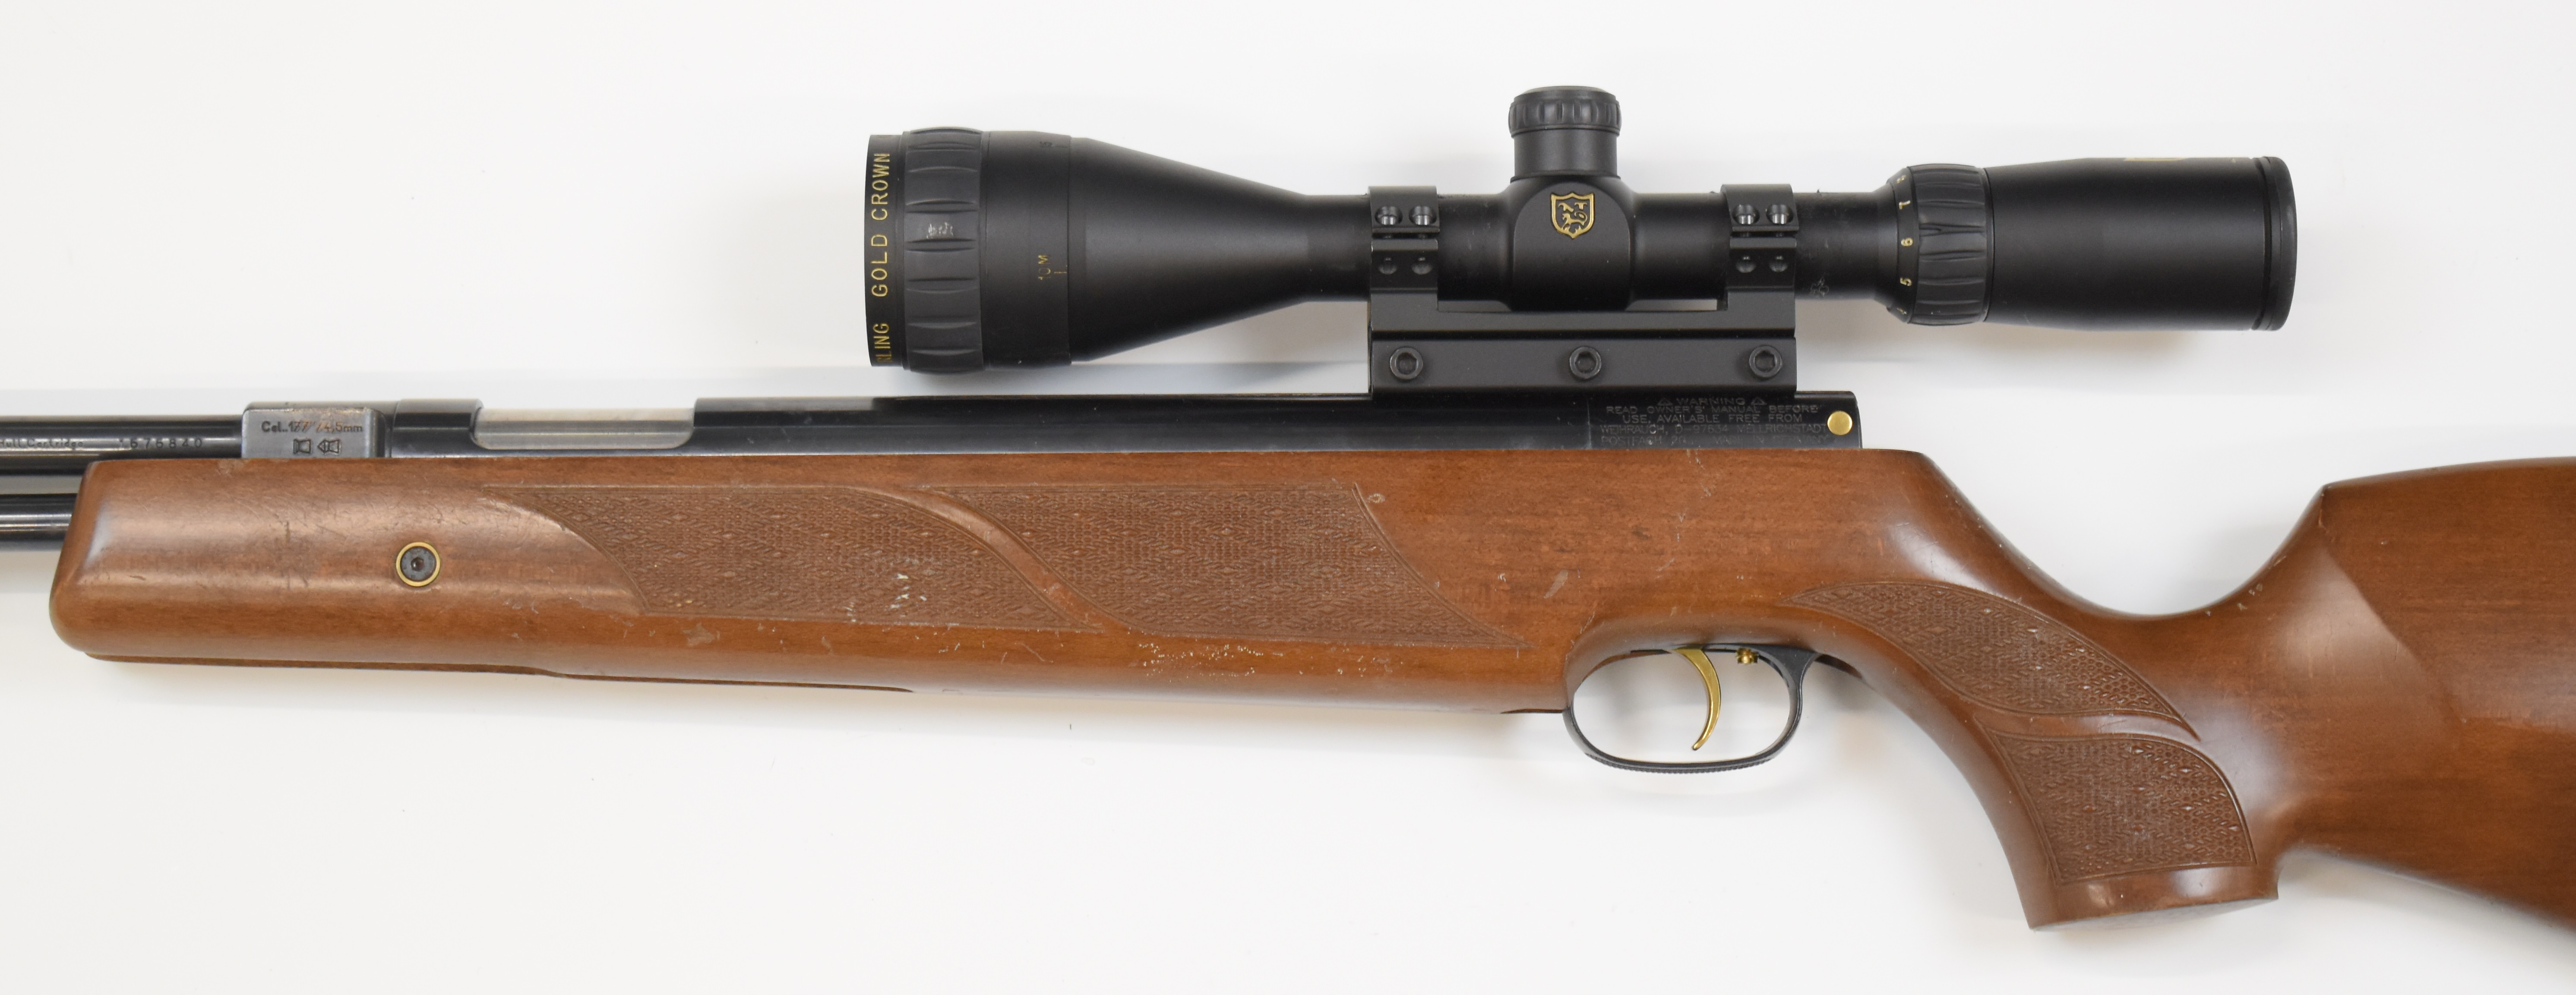 Weihrauch HW97K .177 underlever air rifle with chequered semi-pistol grip, raised cheek piece, sling - Image 8 of 10